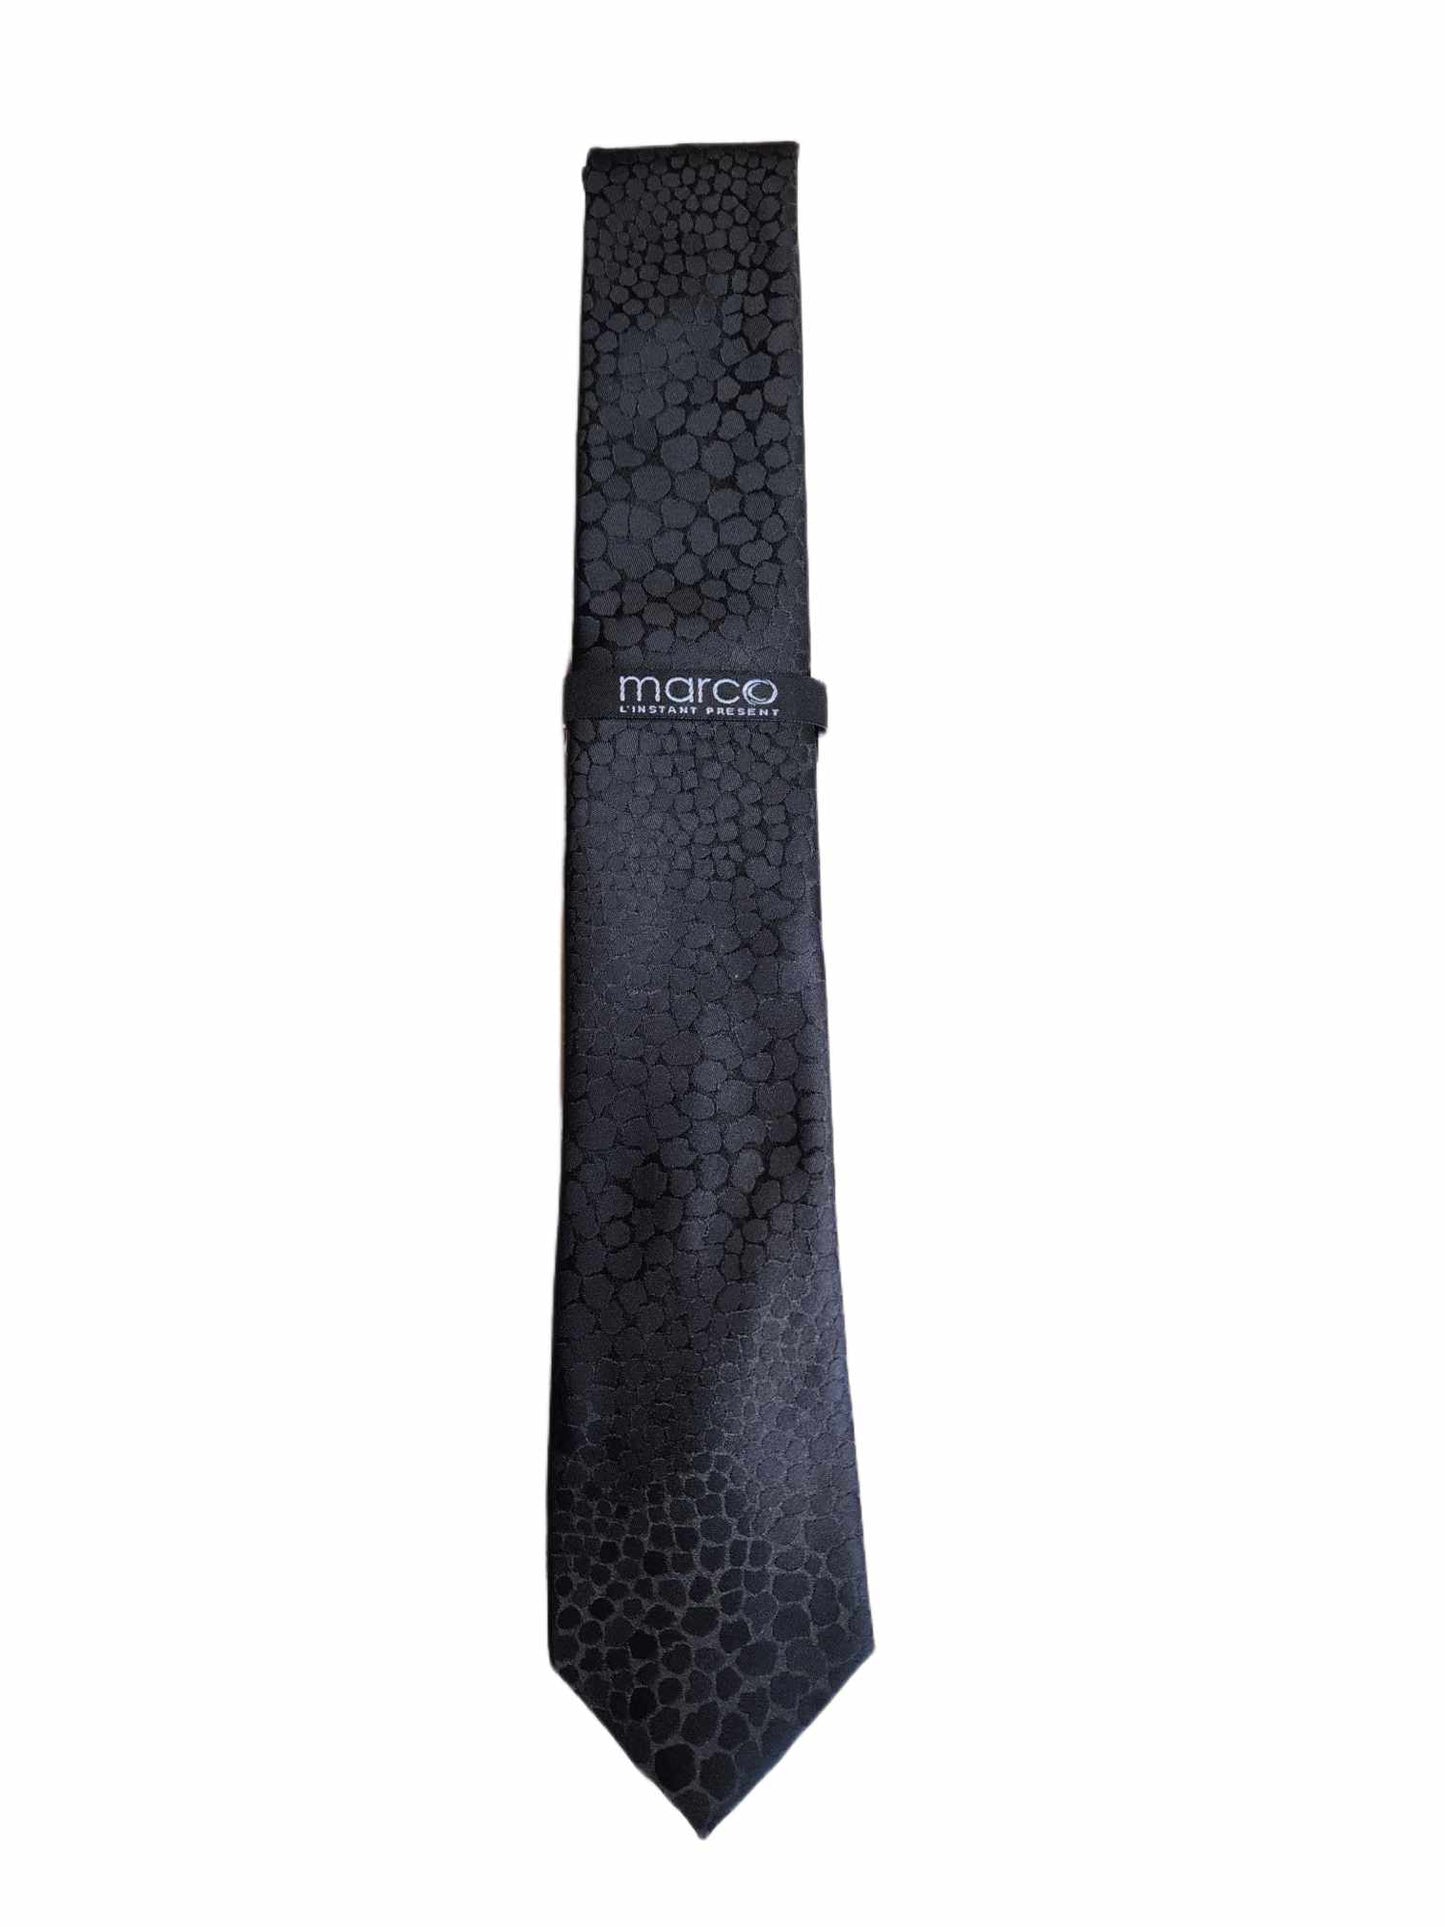 Cravate noire - Marco